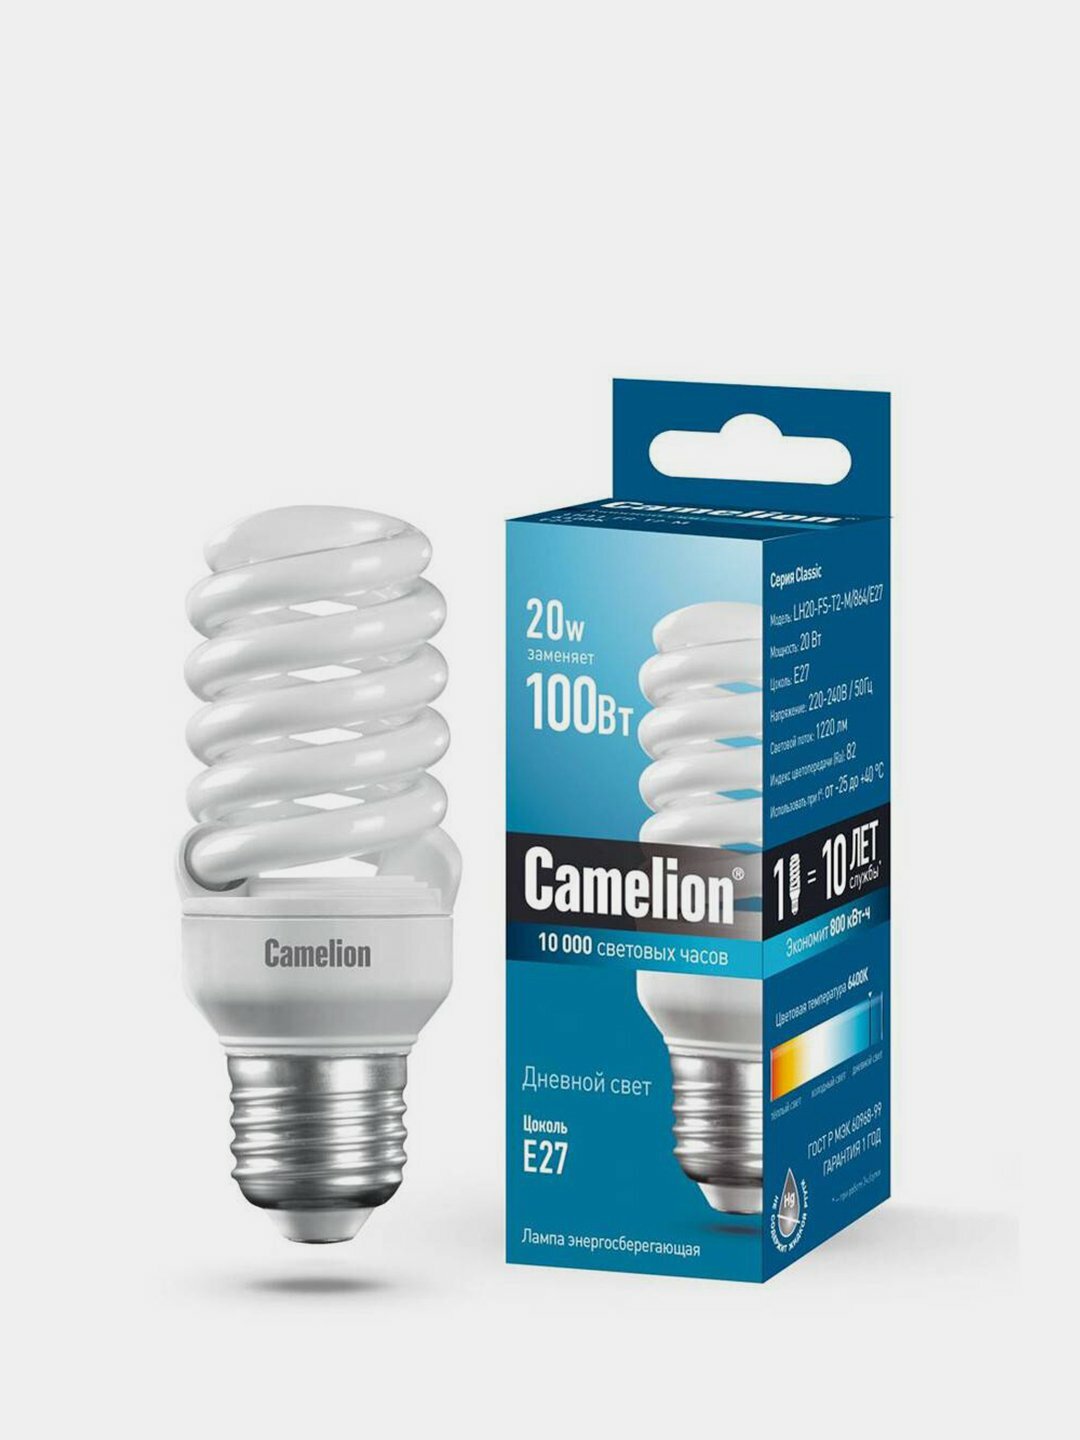 Camelion LH20-FS-T2-M/864/E27, энергосберегающая лампа 20Вт 220В, дневной свет 6400К